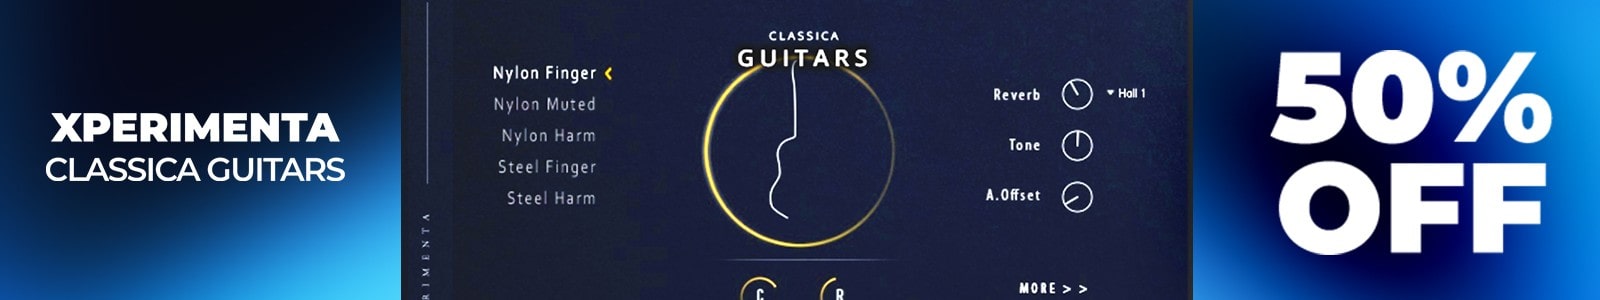 Classica Guitars by Xperimenta